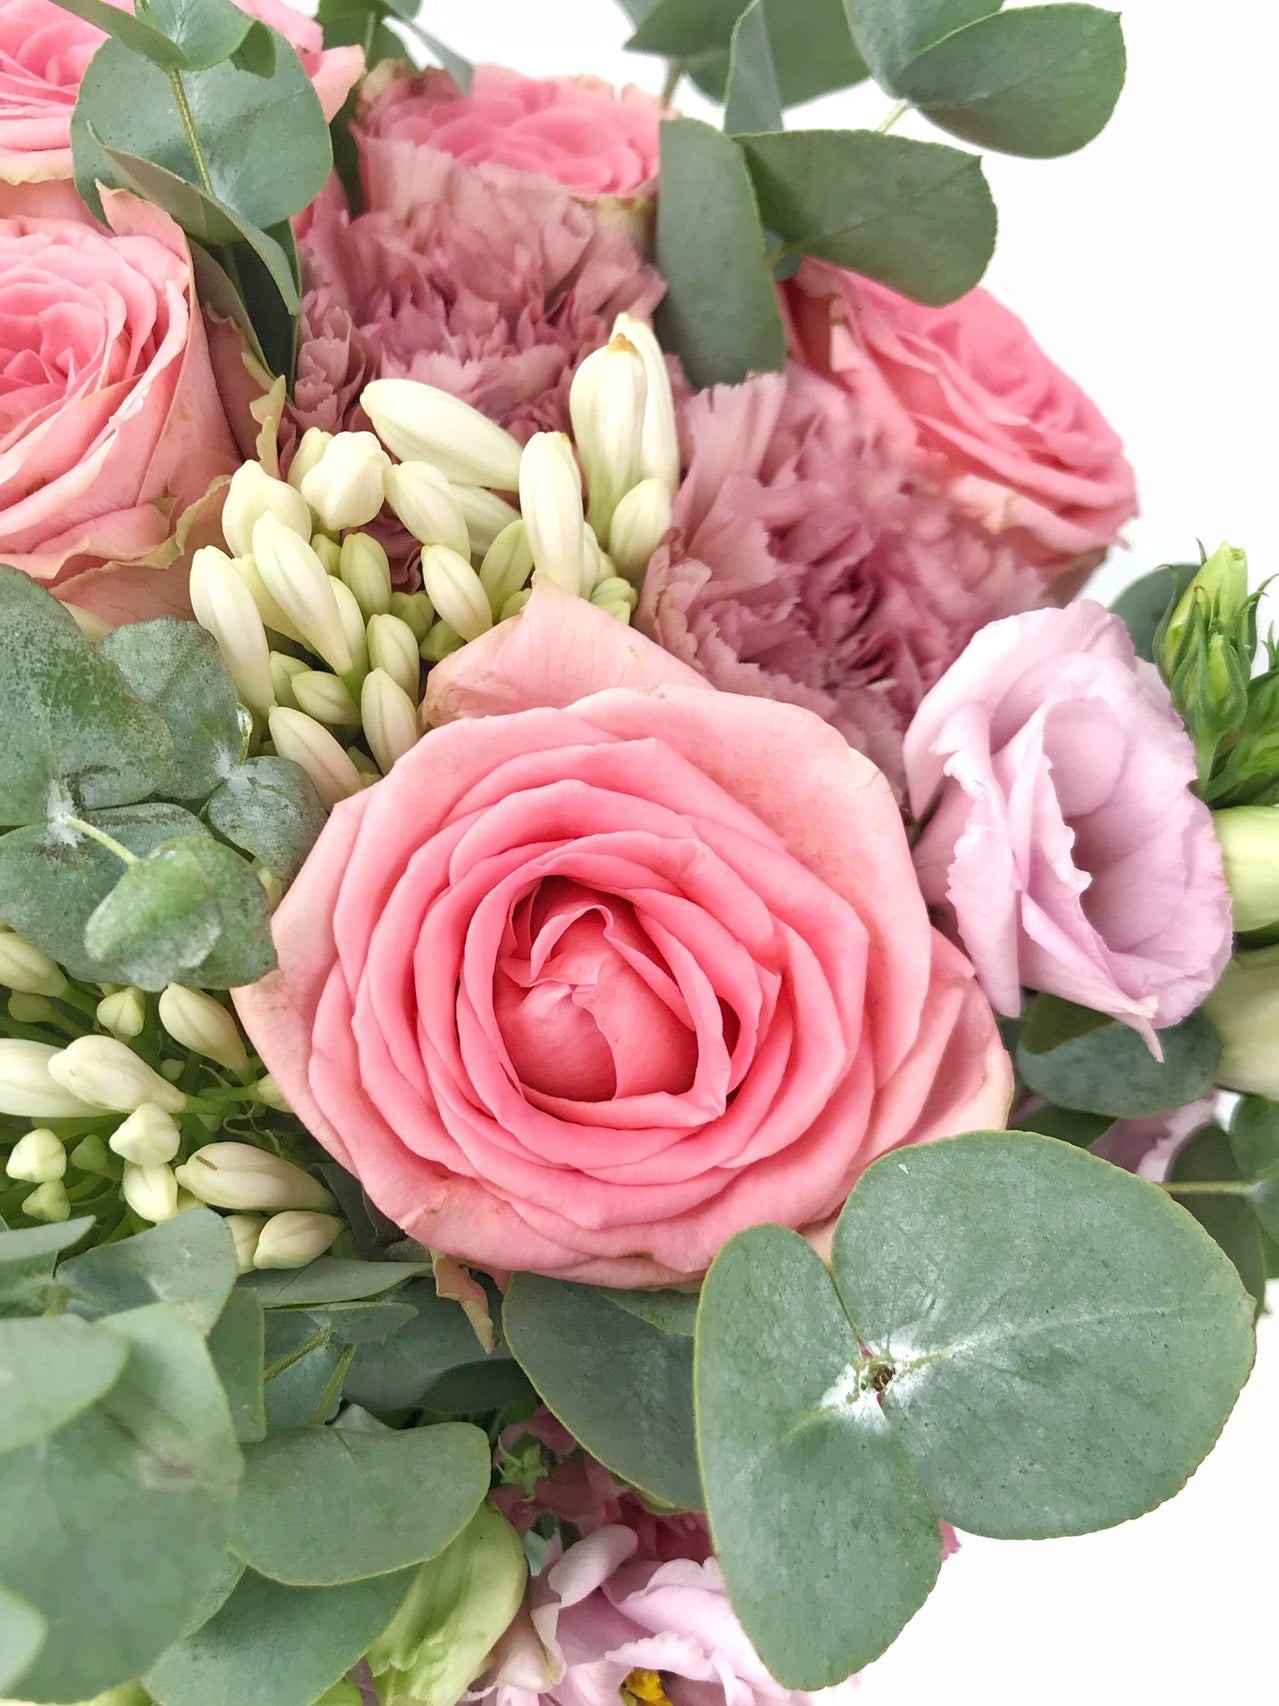 Envoi de fleurs pour anniversaire - Grand bouquet Sofia rose